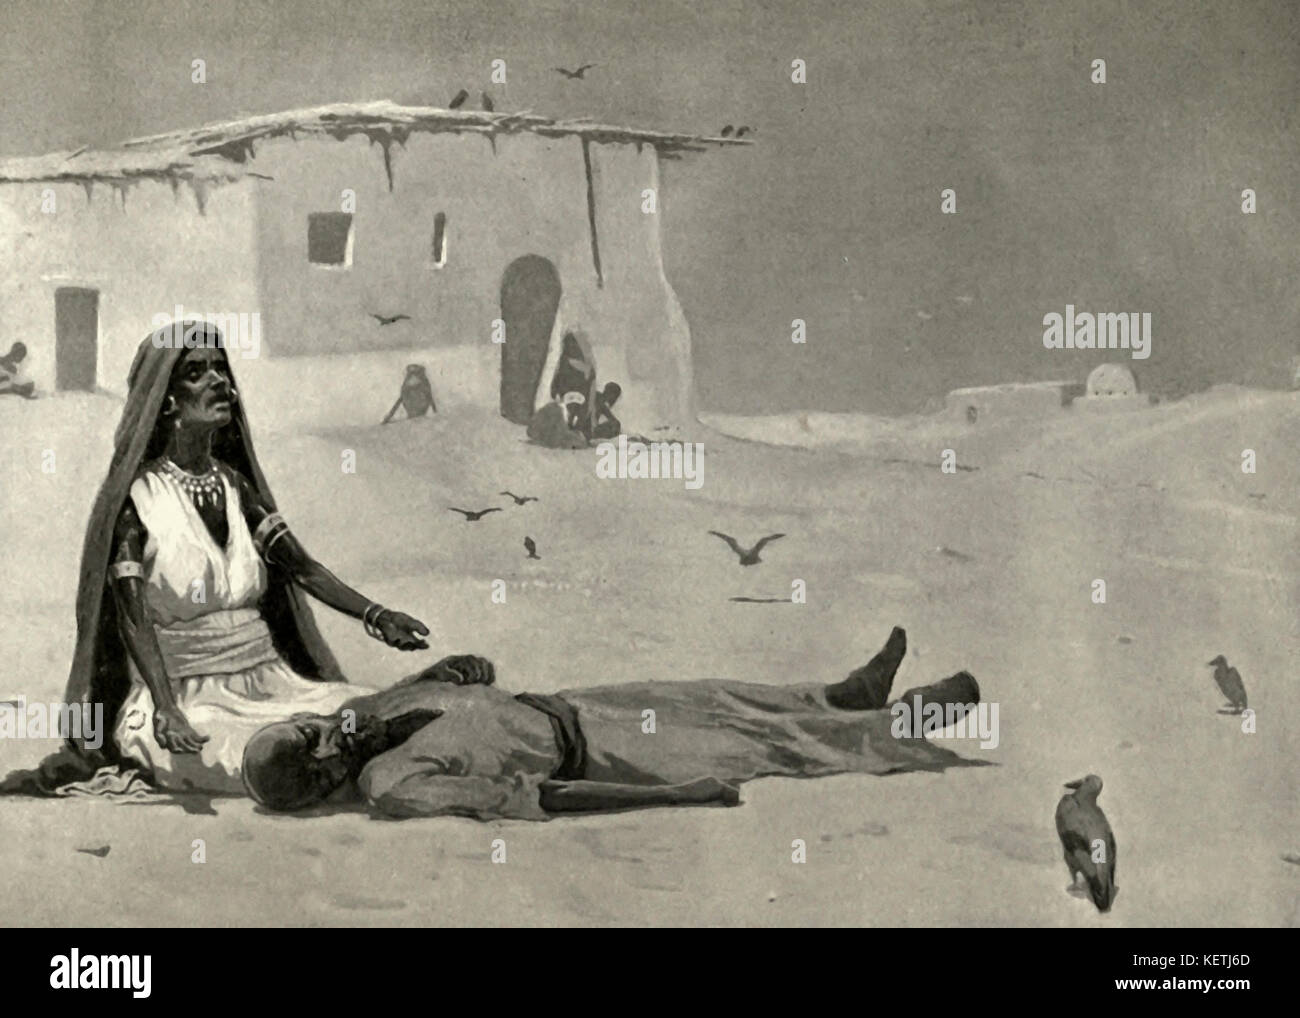 Famine Stricken in Sudan, circa 1880 Stock Photo